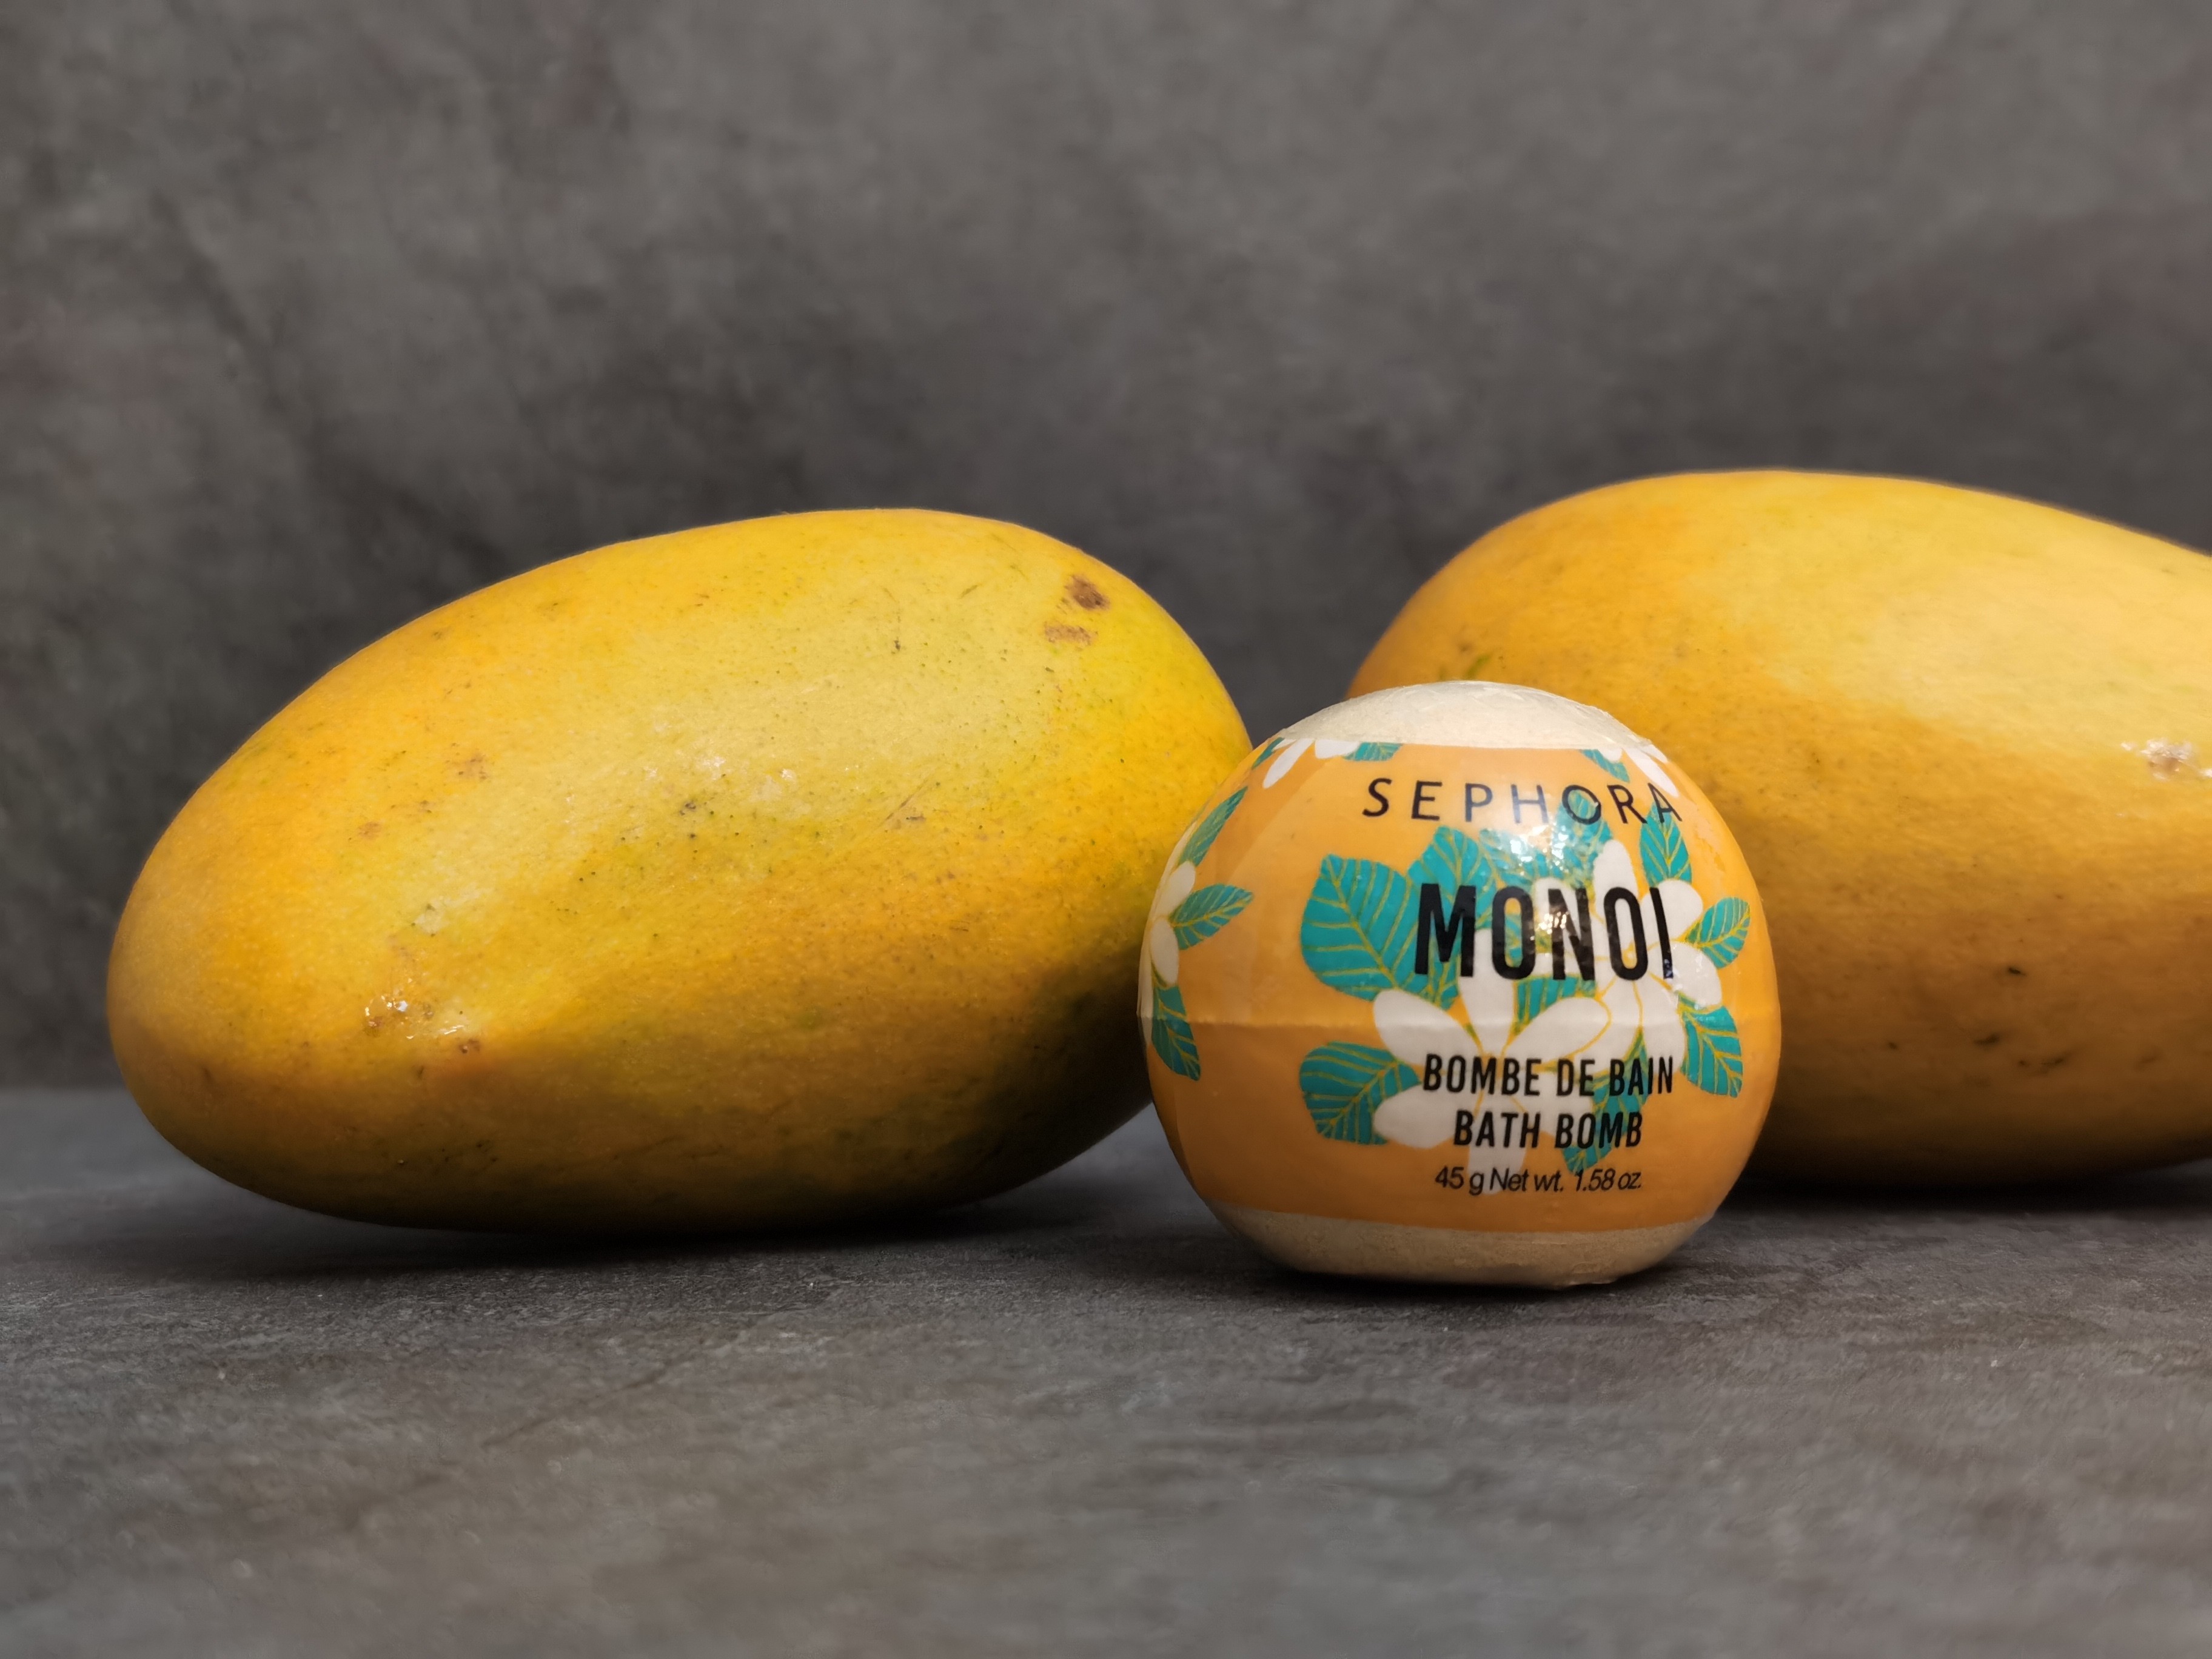 Monoi Bath Bomb By Sephora with mangos